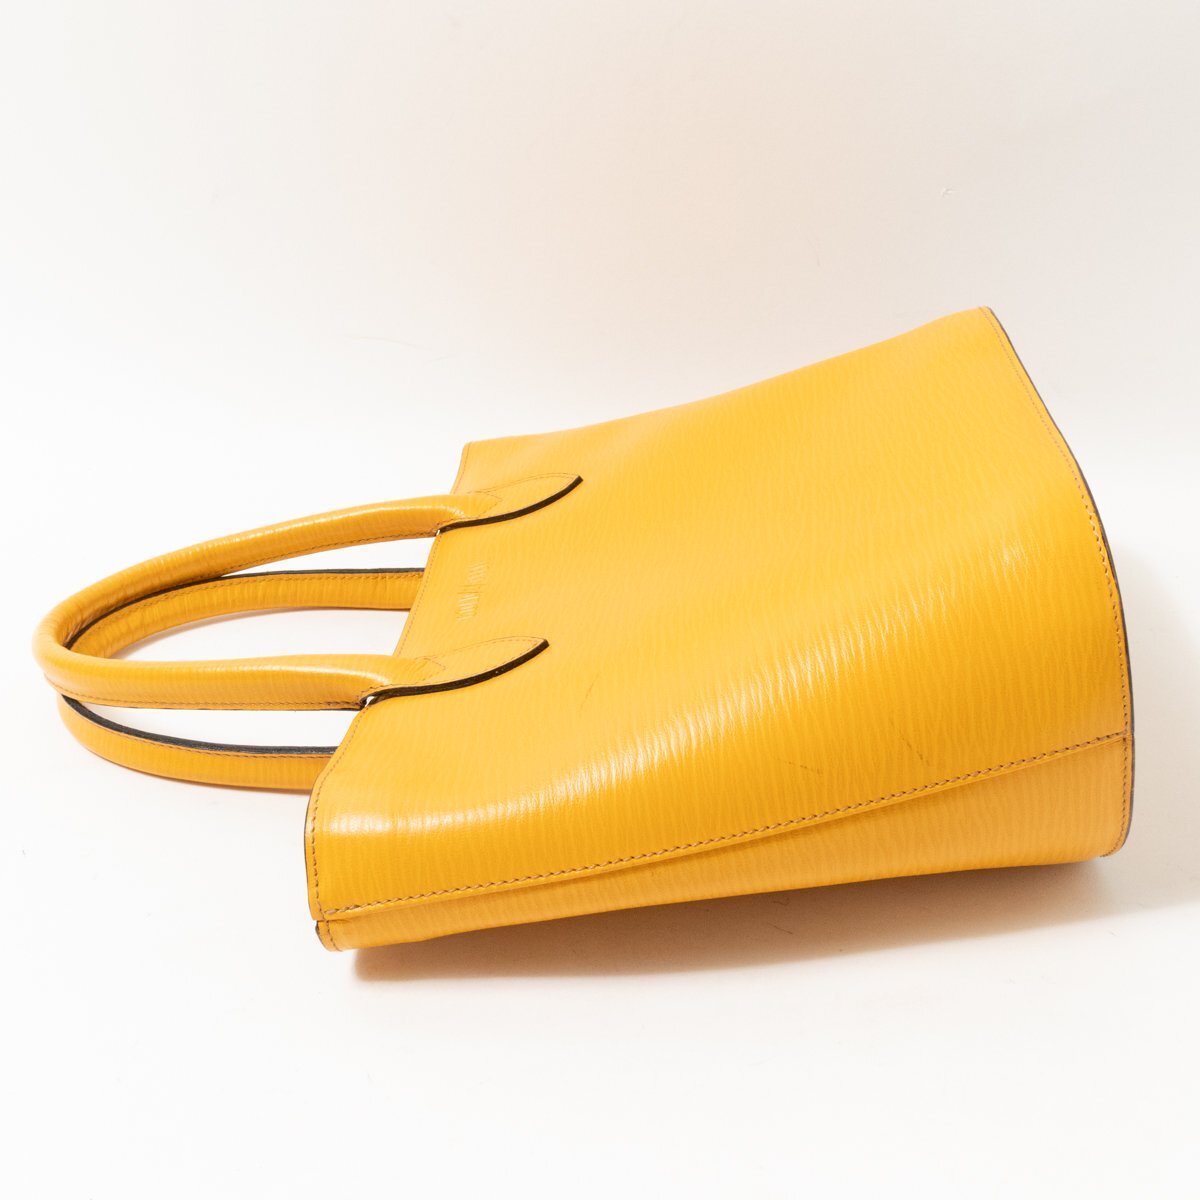 GOLD PFEIL ручная сумочка Gold-Pfeil горчично-желтый застежка-молния открытие и закрытие красивый . elegant кожа Logo bag сумка женщина женский 